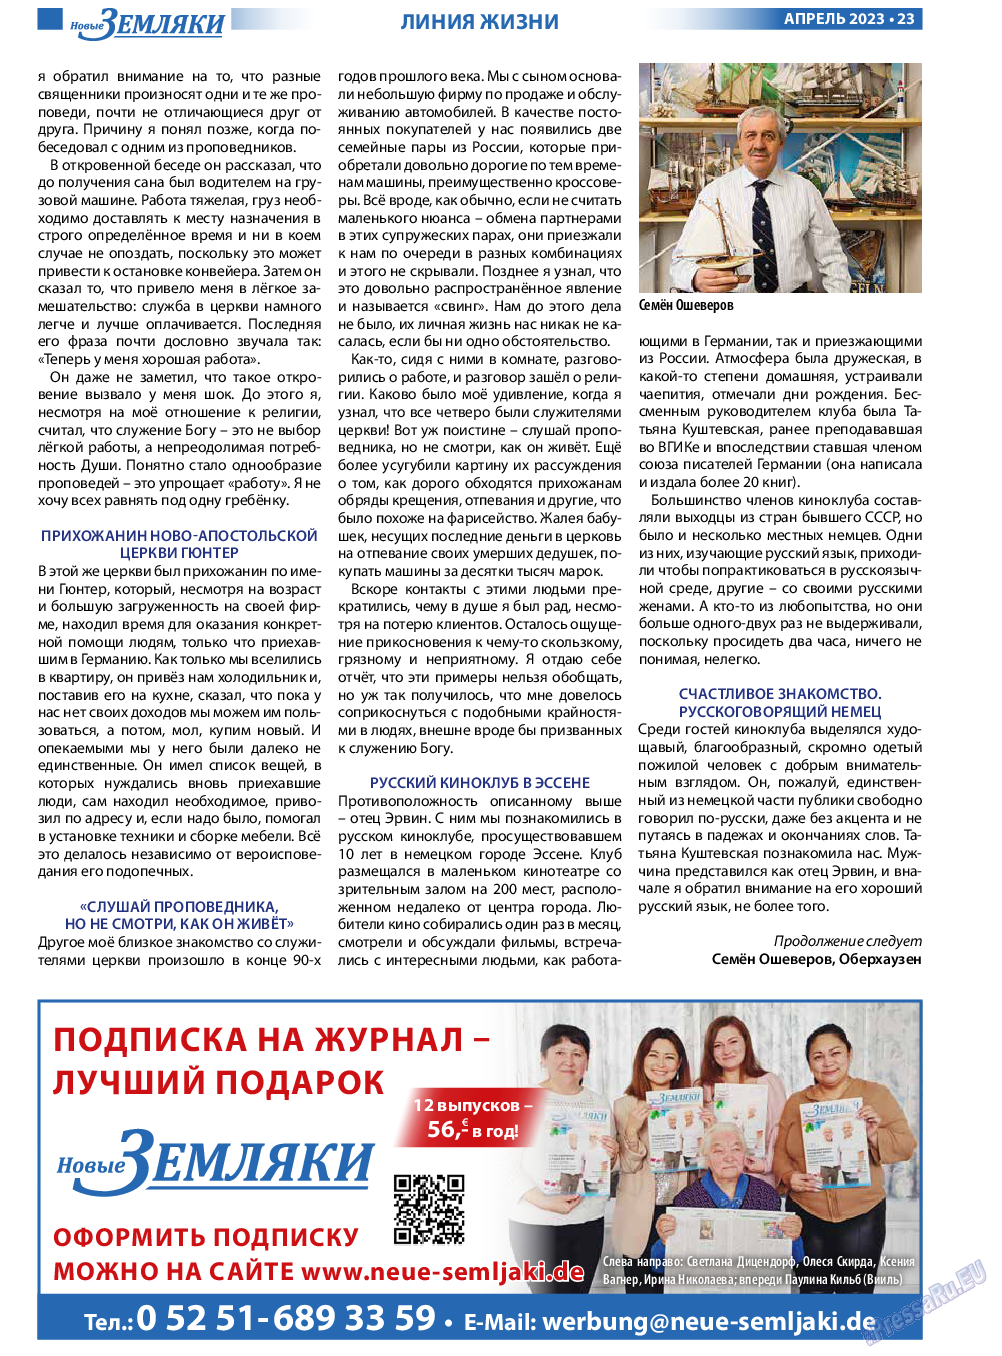 Новые Земляки, газета. 2023 №4 стр.23